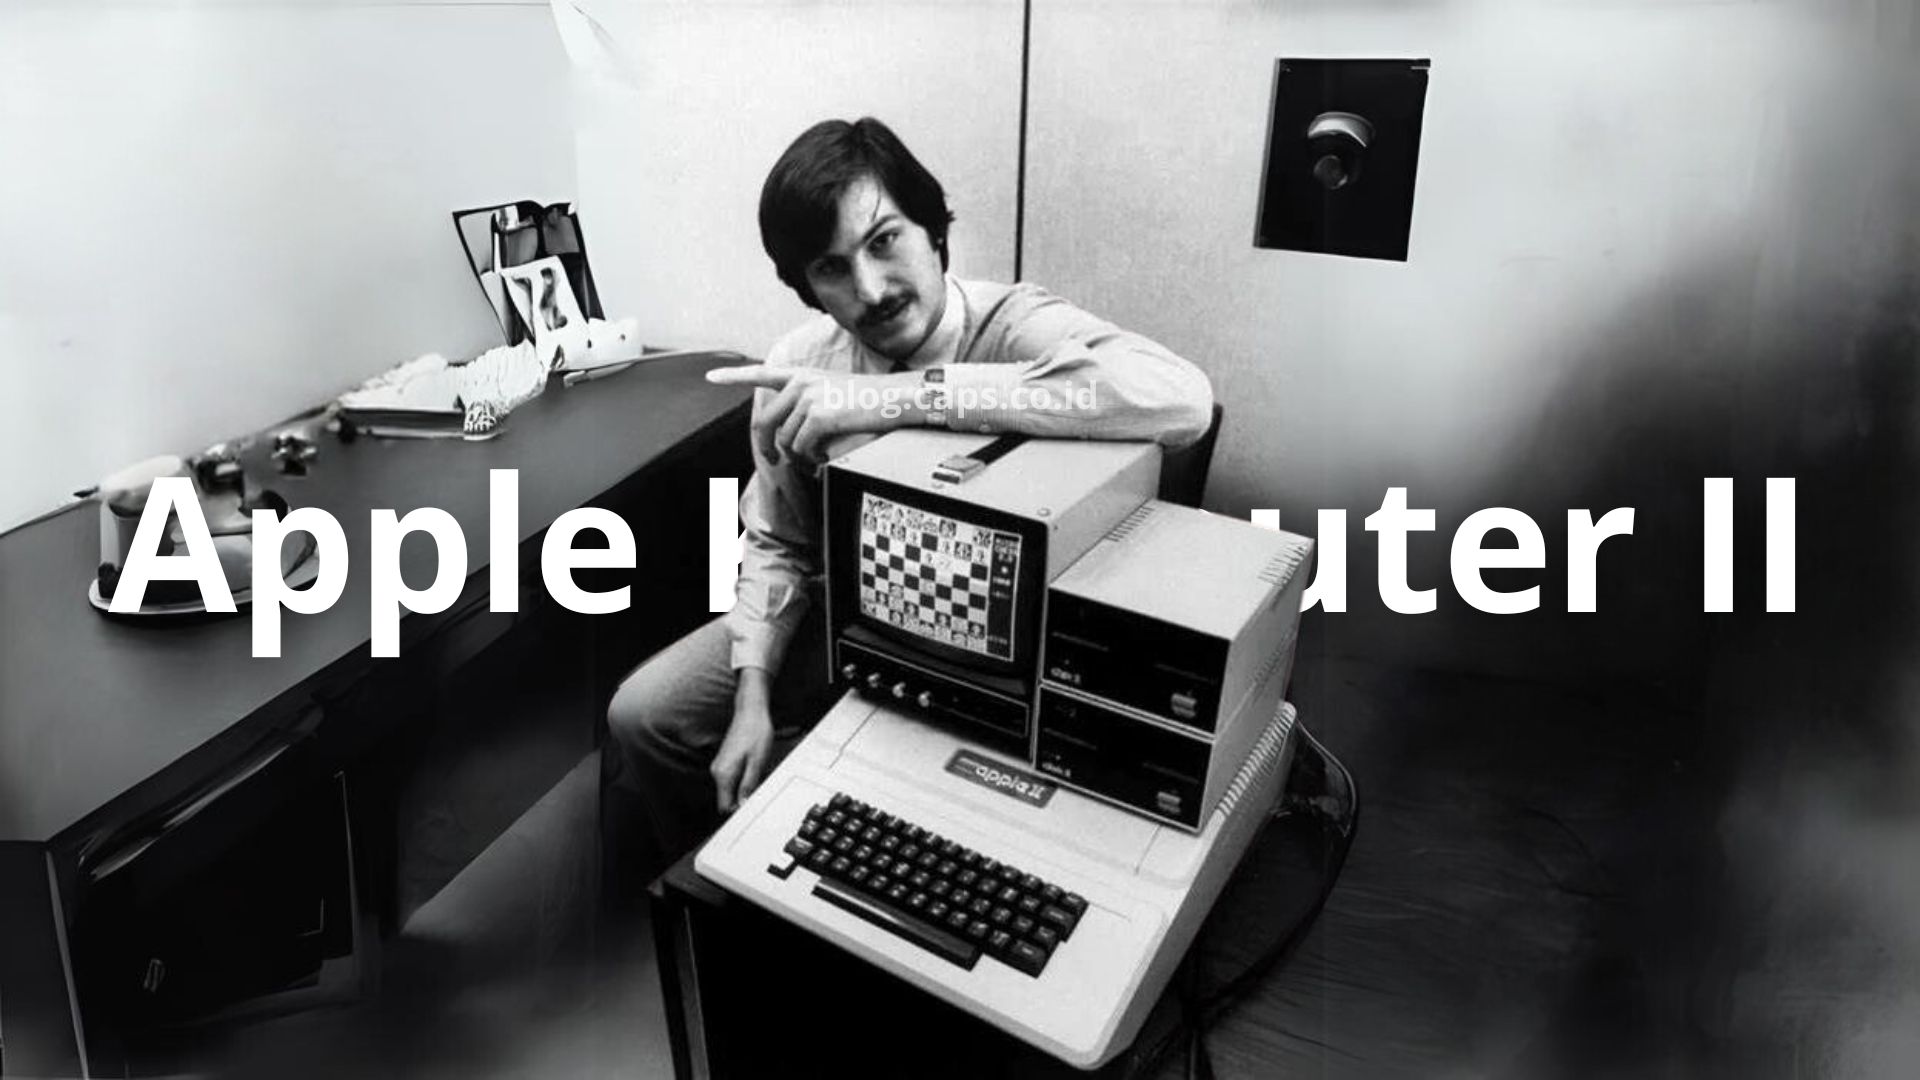 Apple II: Pionir Komputer yang Mengubah Dunia